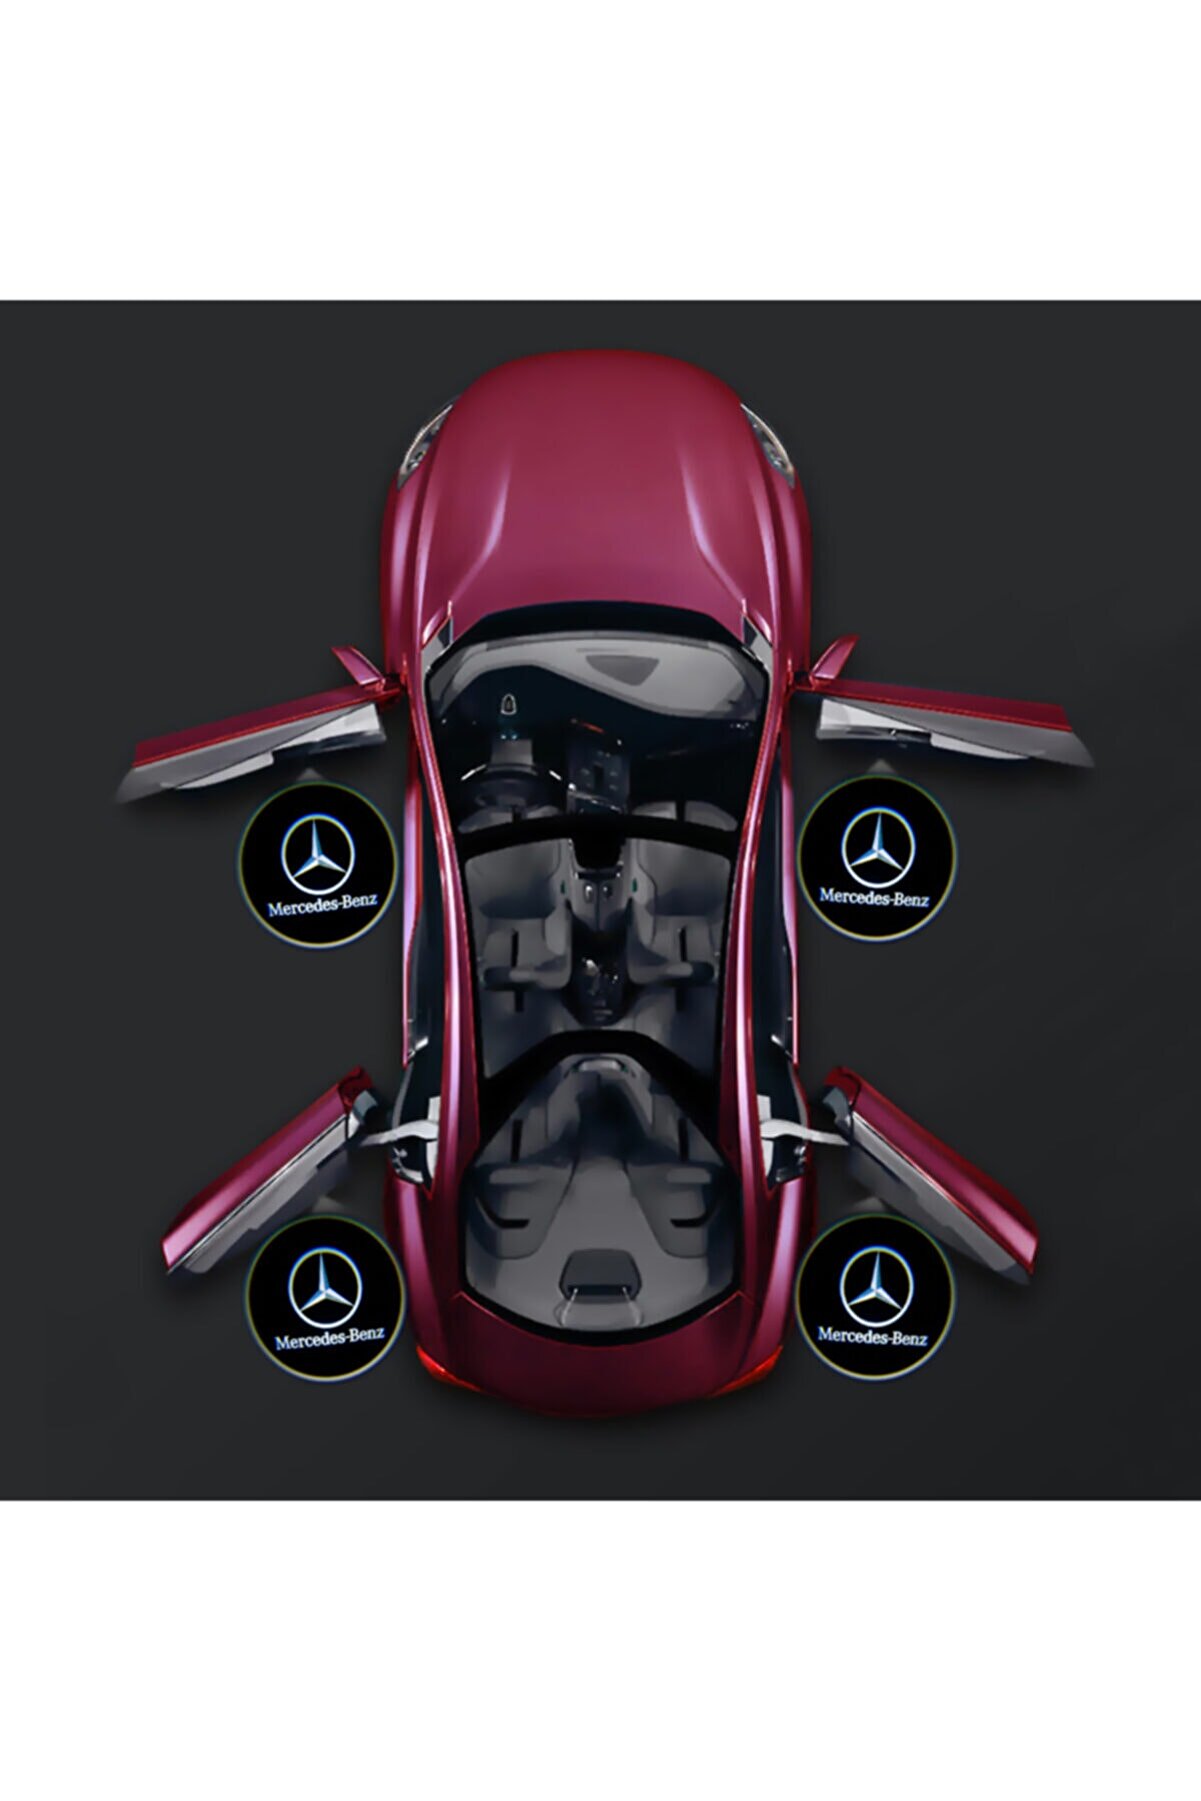 Waxen Mercedes Kapı Altı Pilli Led Logo Hd Lens Karanlık Ve Mesafe Sensörlü Led Işıklı Lamba